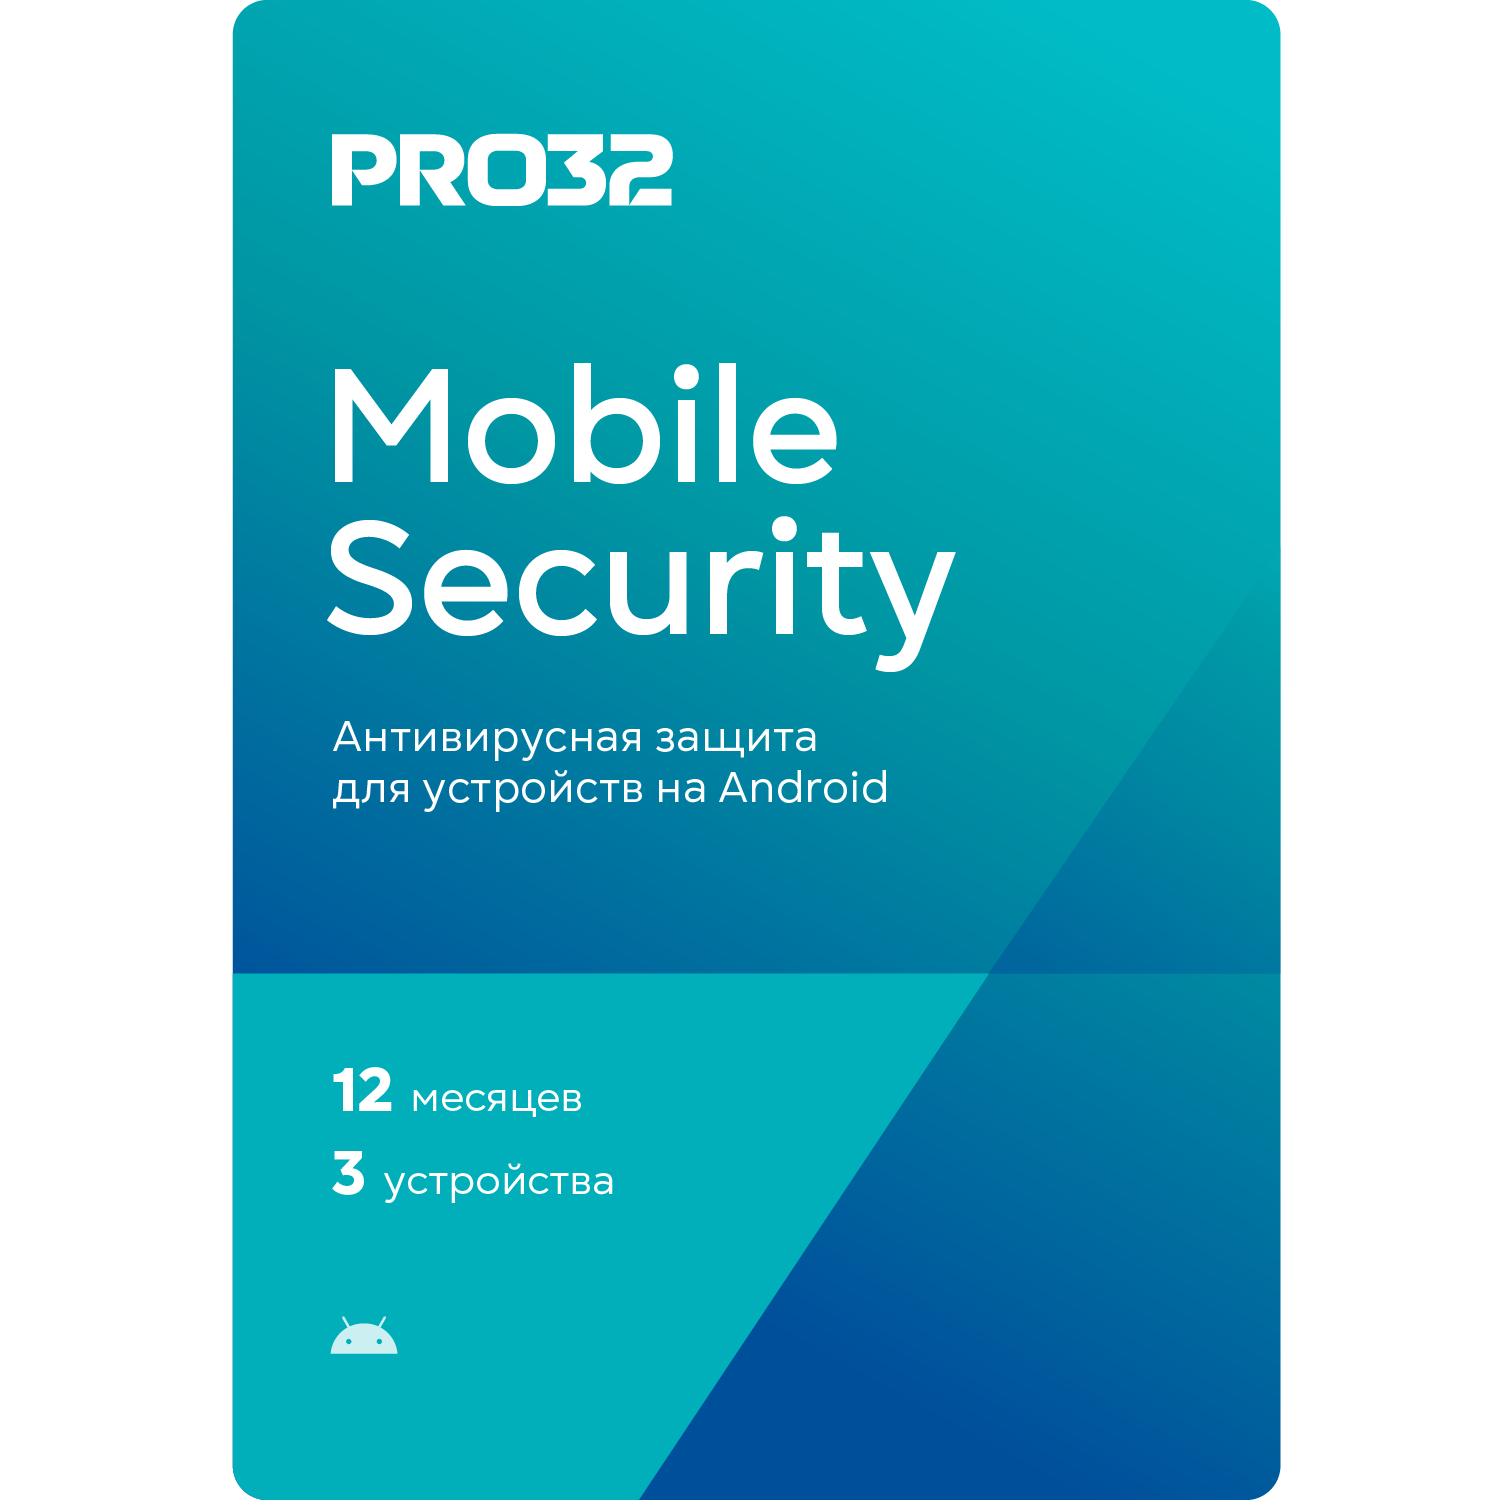 Seguridad móvil PRO32